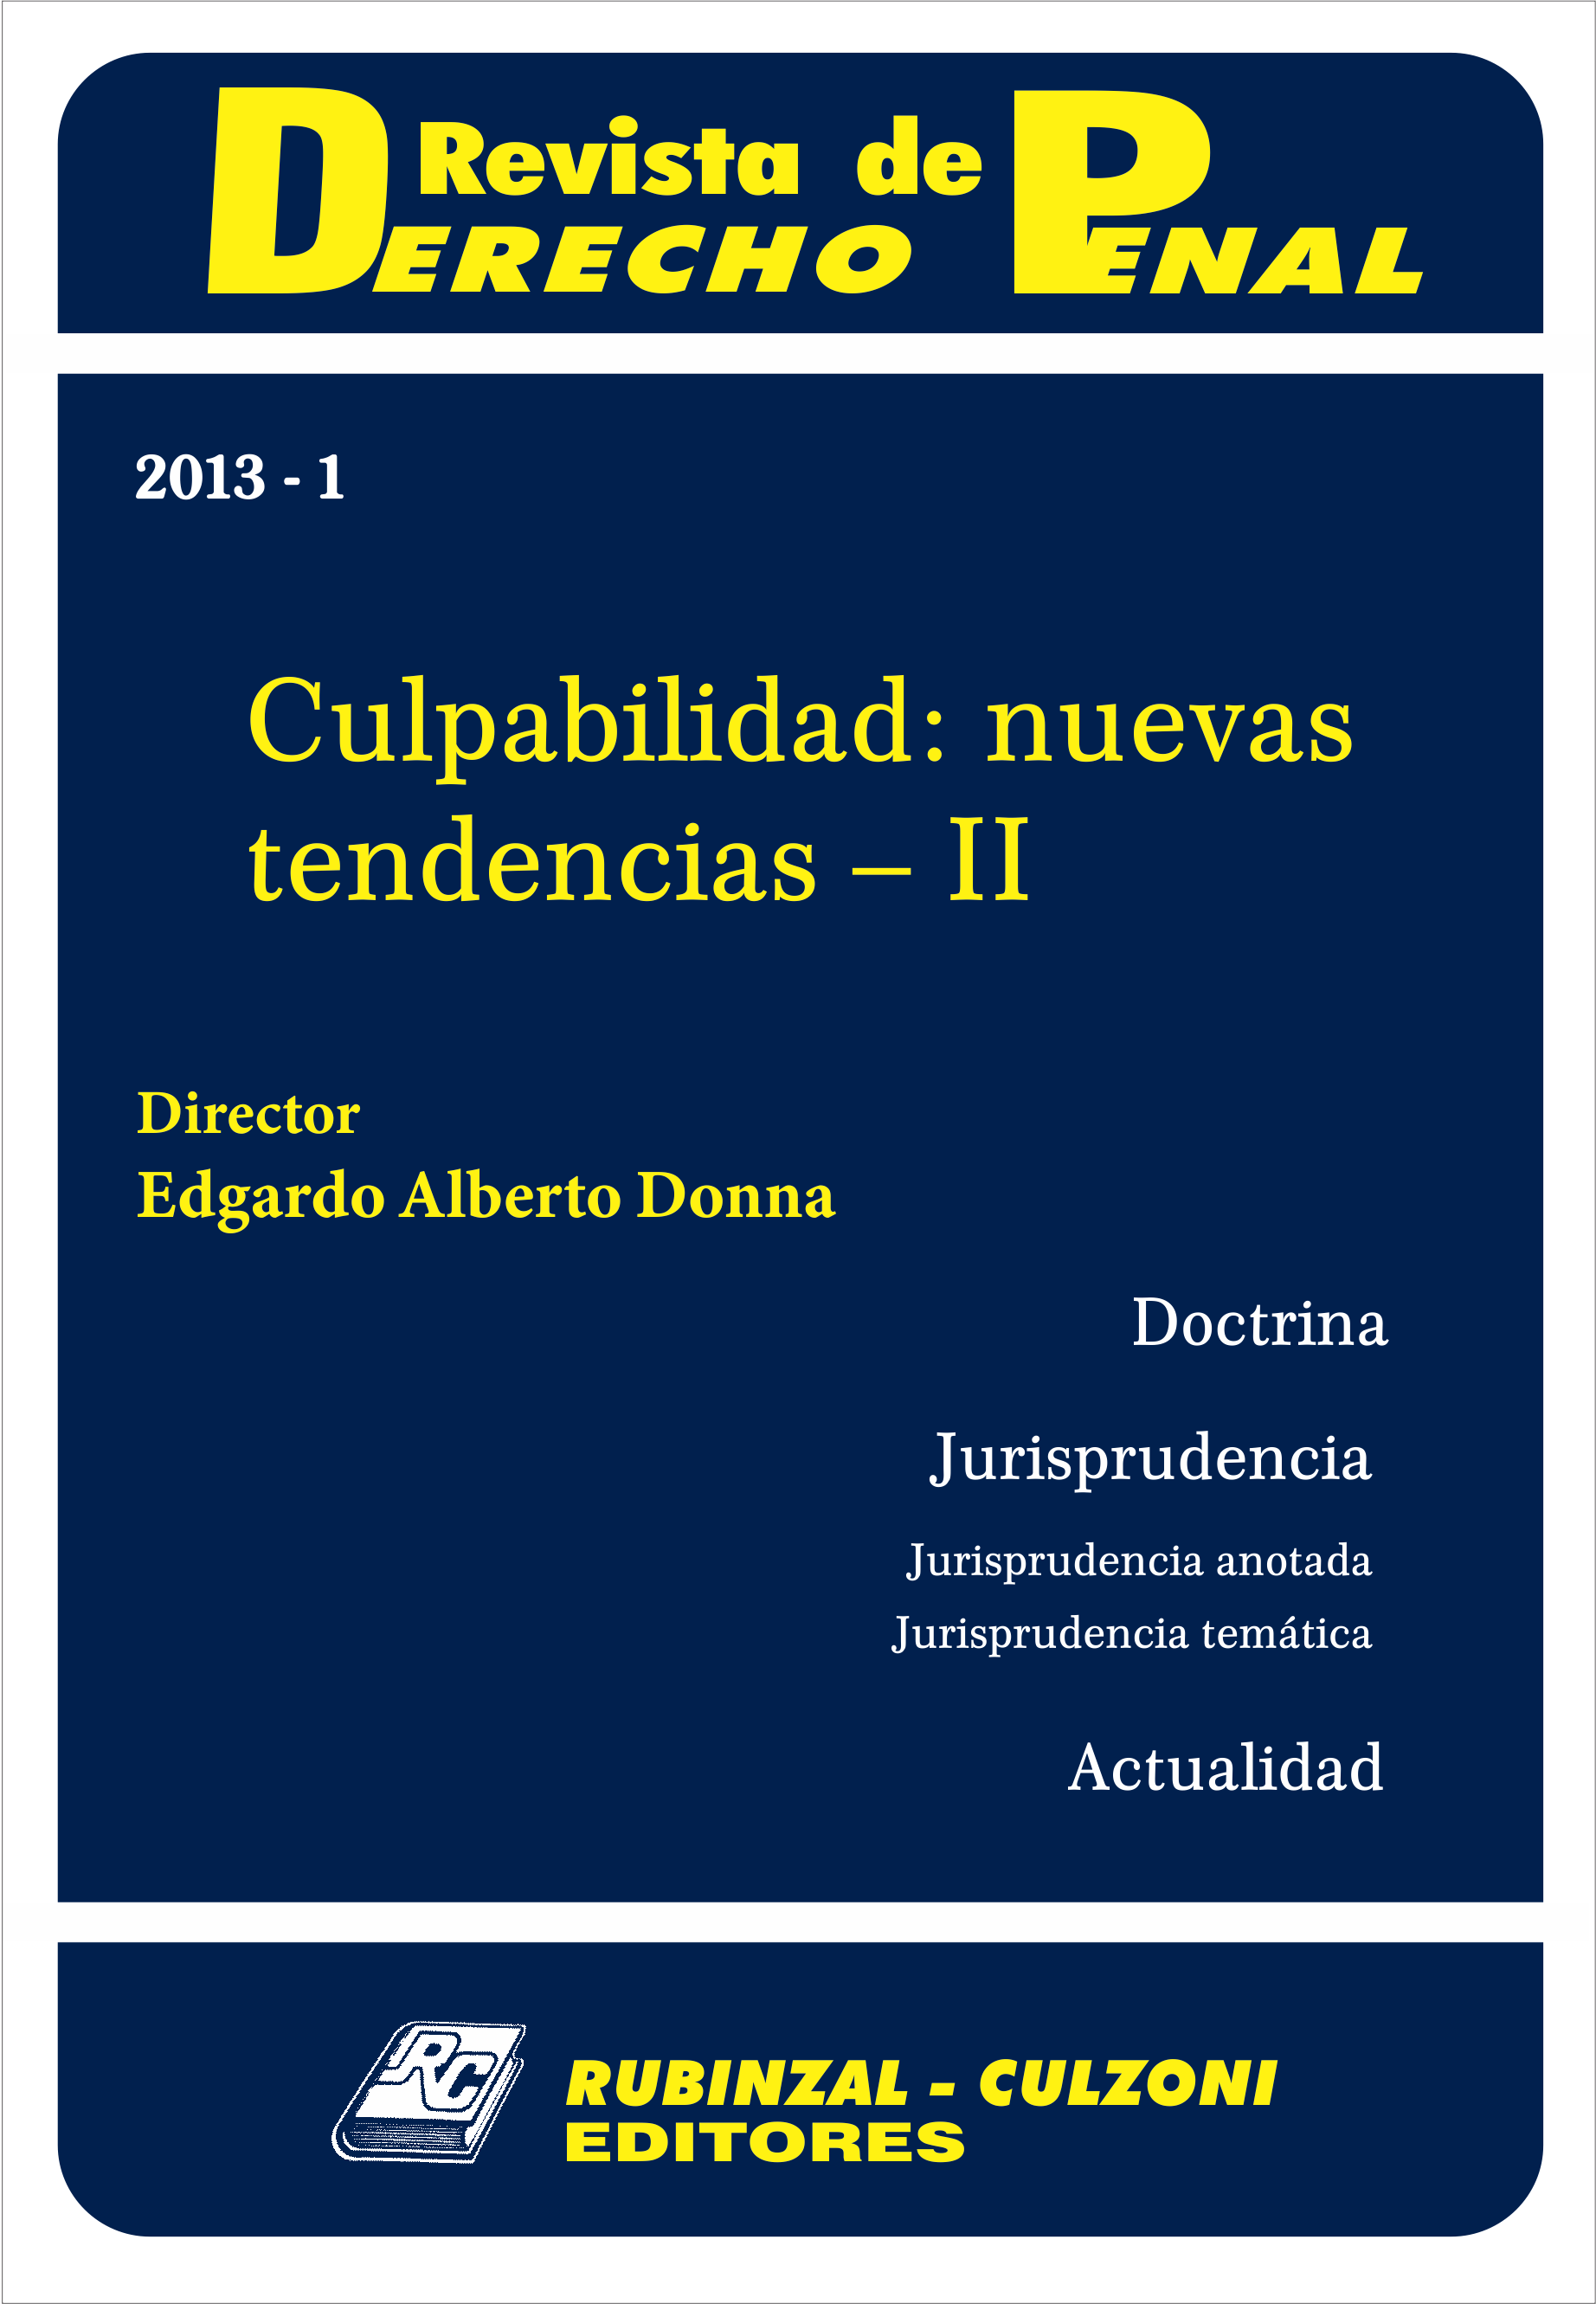 Revista de Derecho Penal - Culpabilidad: nuevas tendencias - II